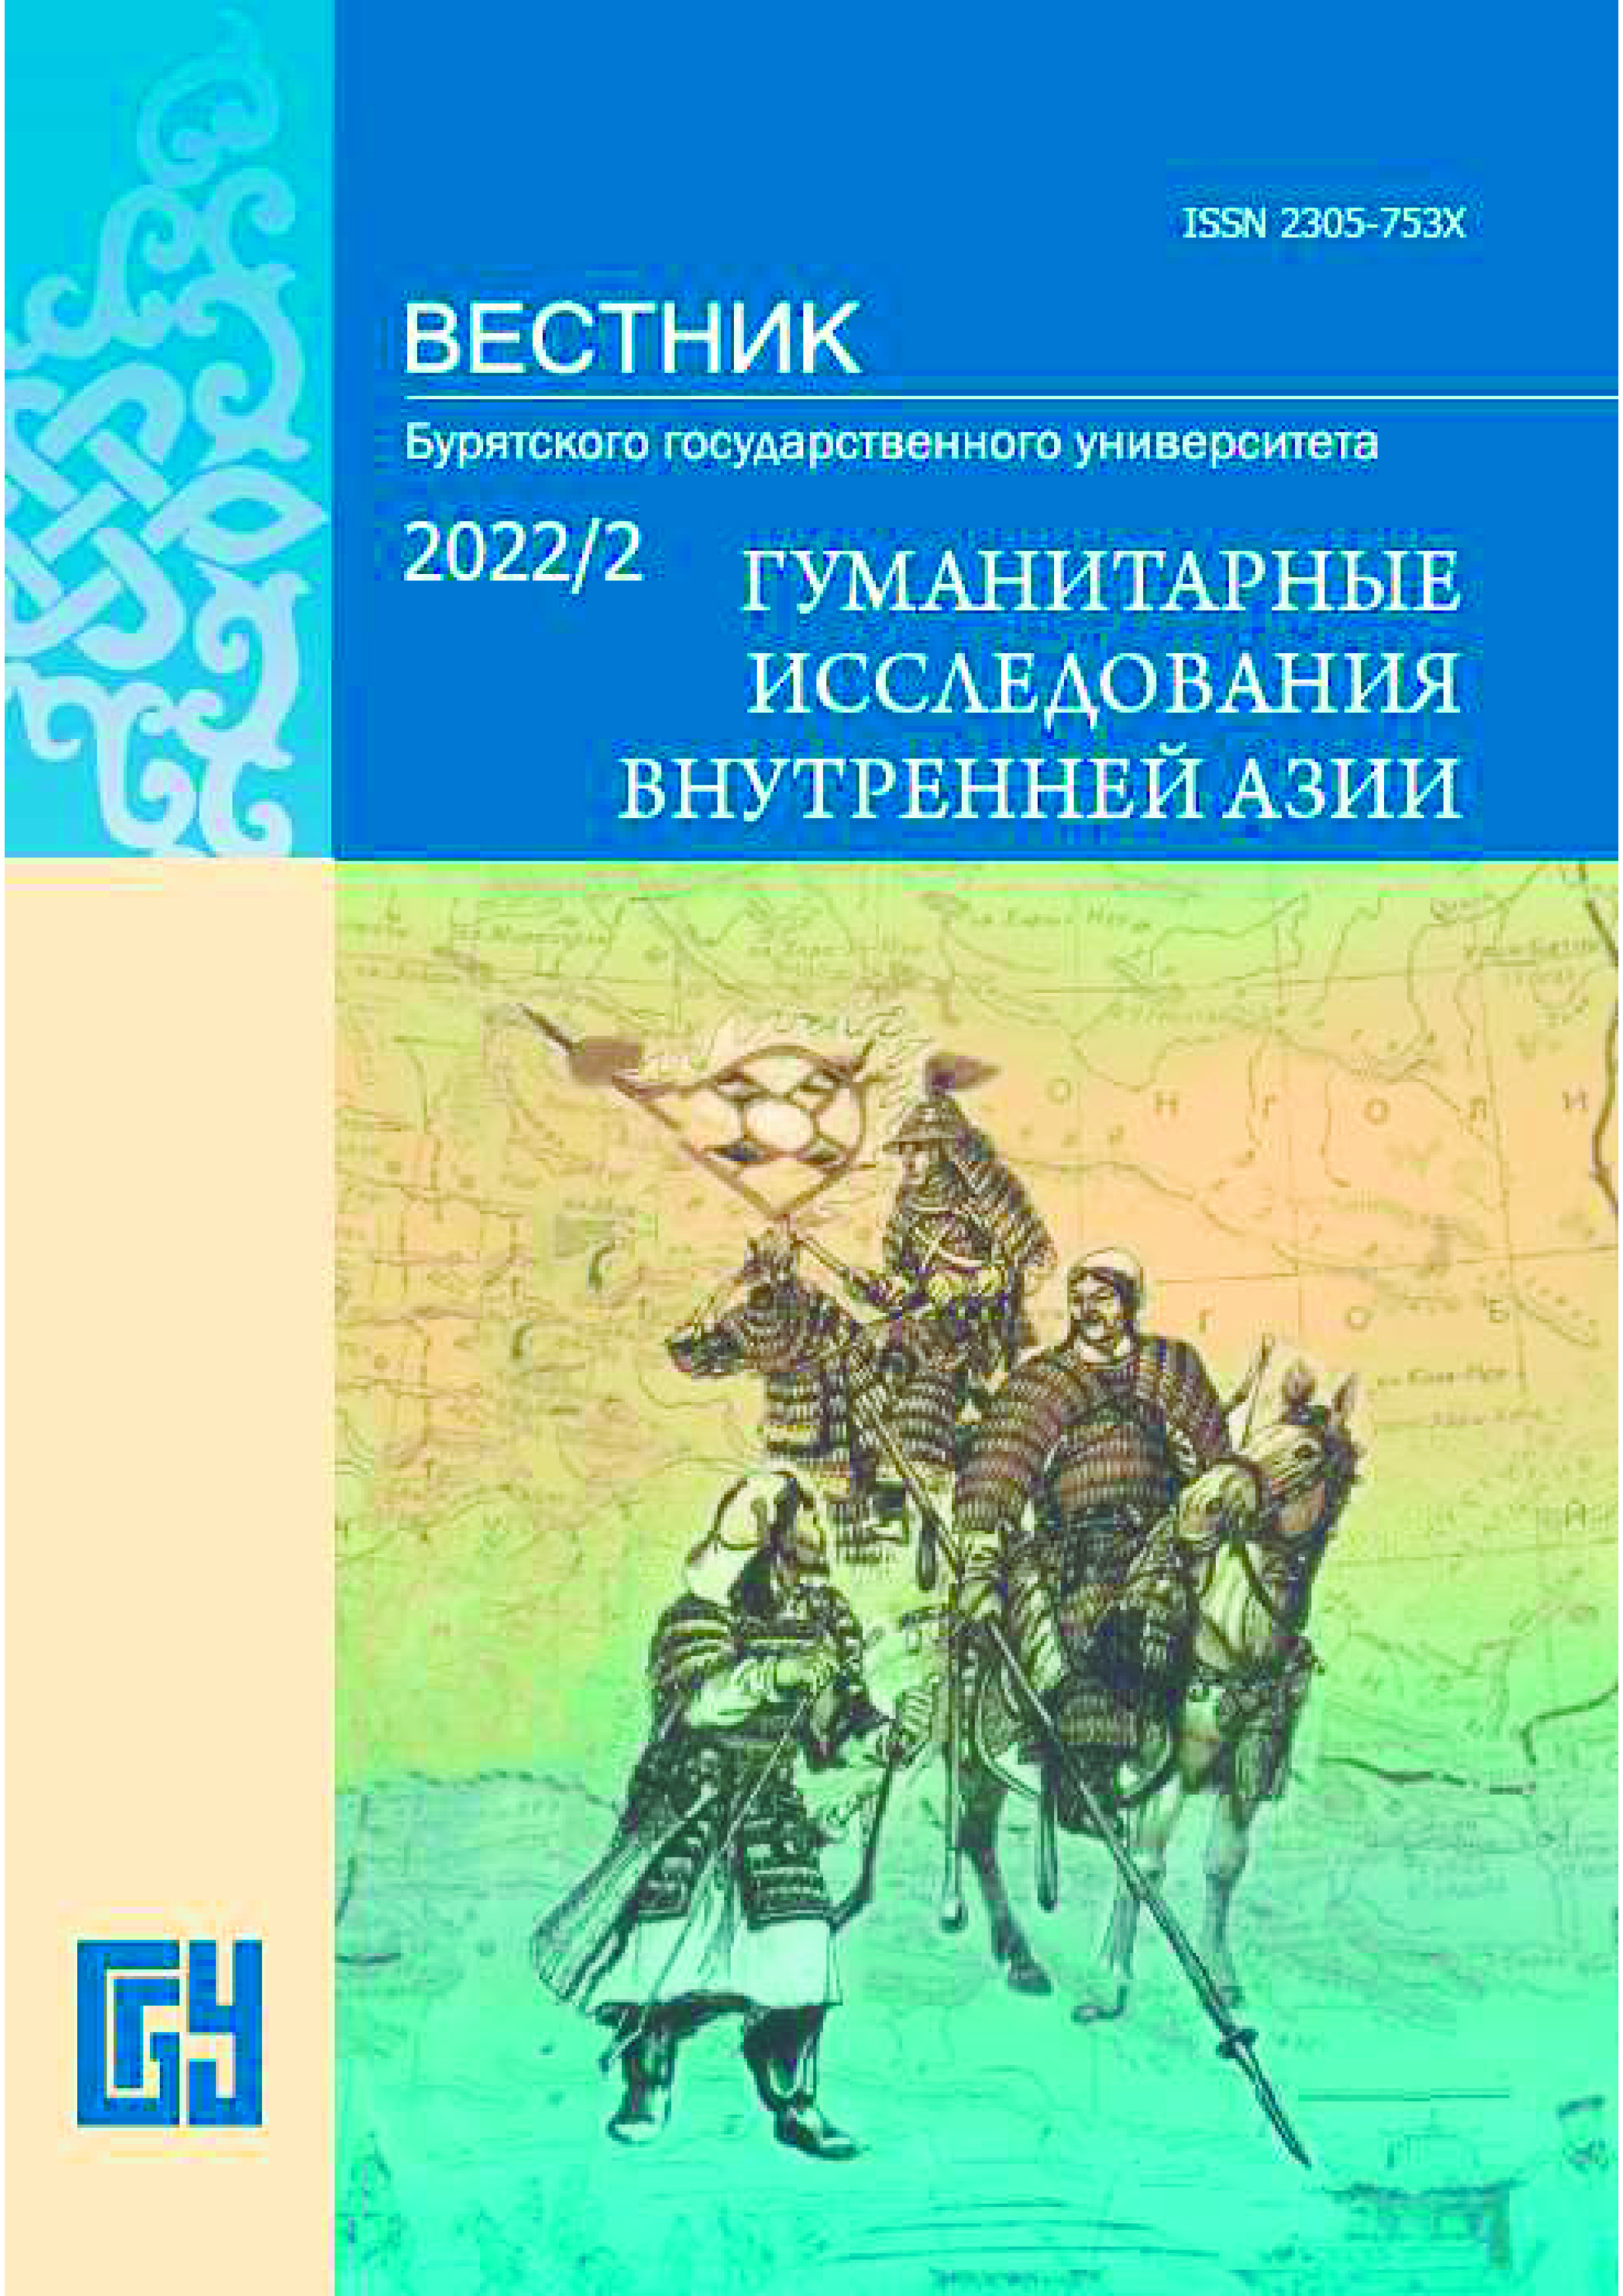 Опубликована статья Н.С. Барданова  о советско-монгольских отношениях в 1920-30 гг.